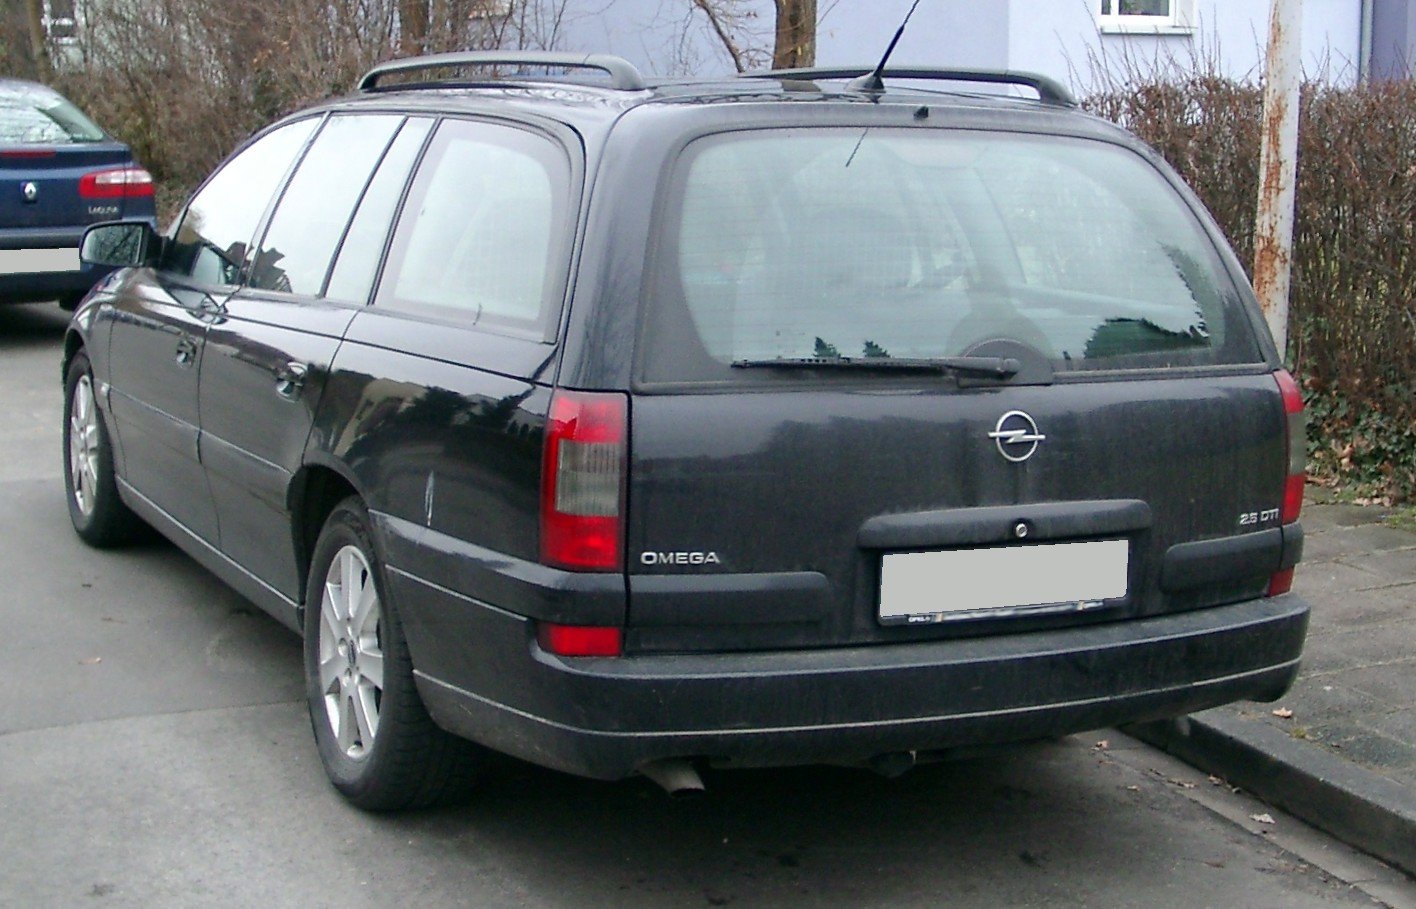 Opel_Omega_Kombi_rear_20080118.jpg